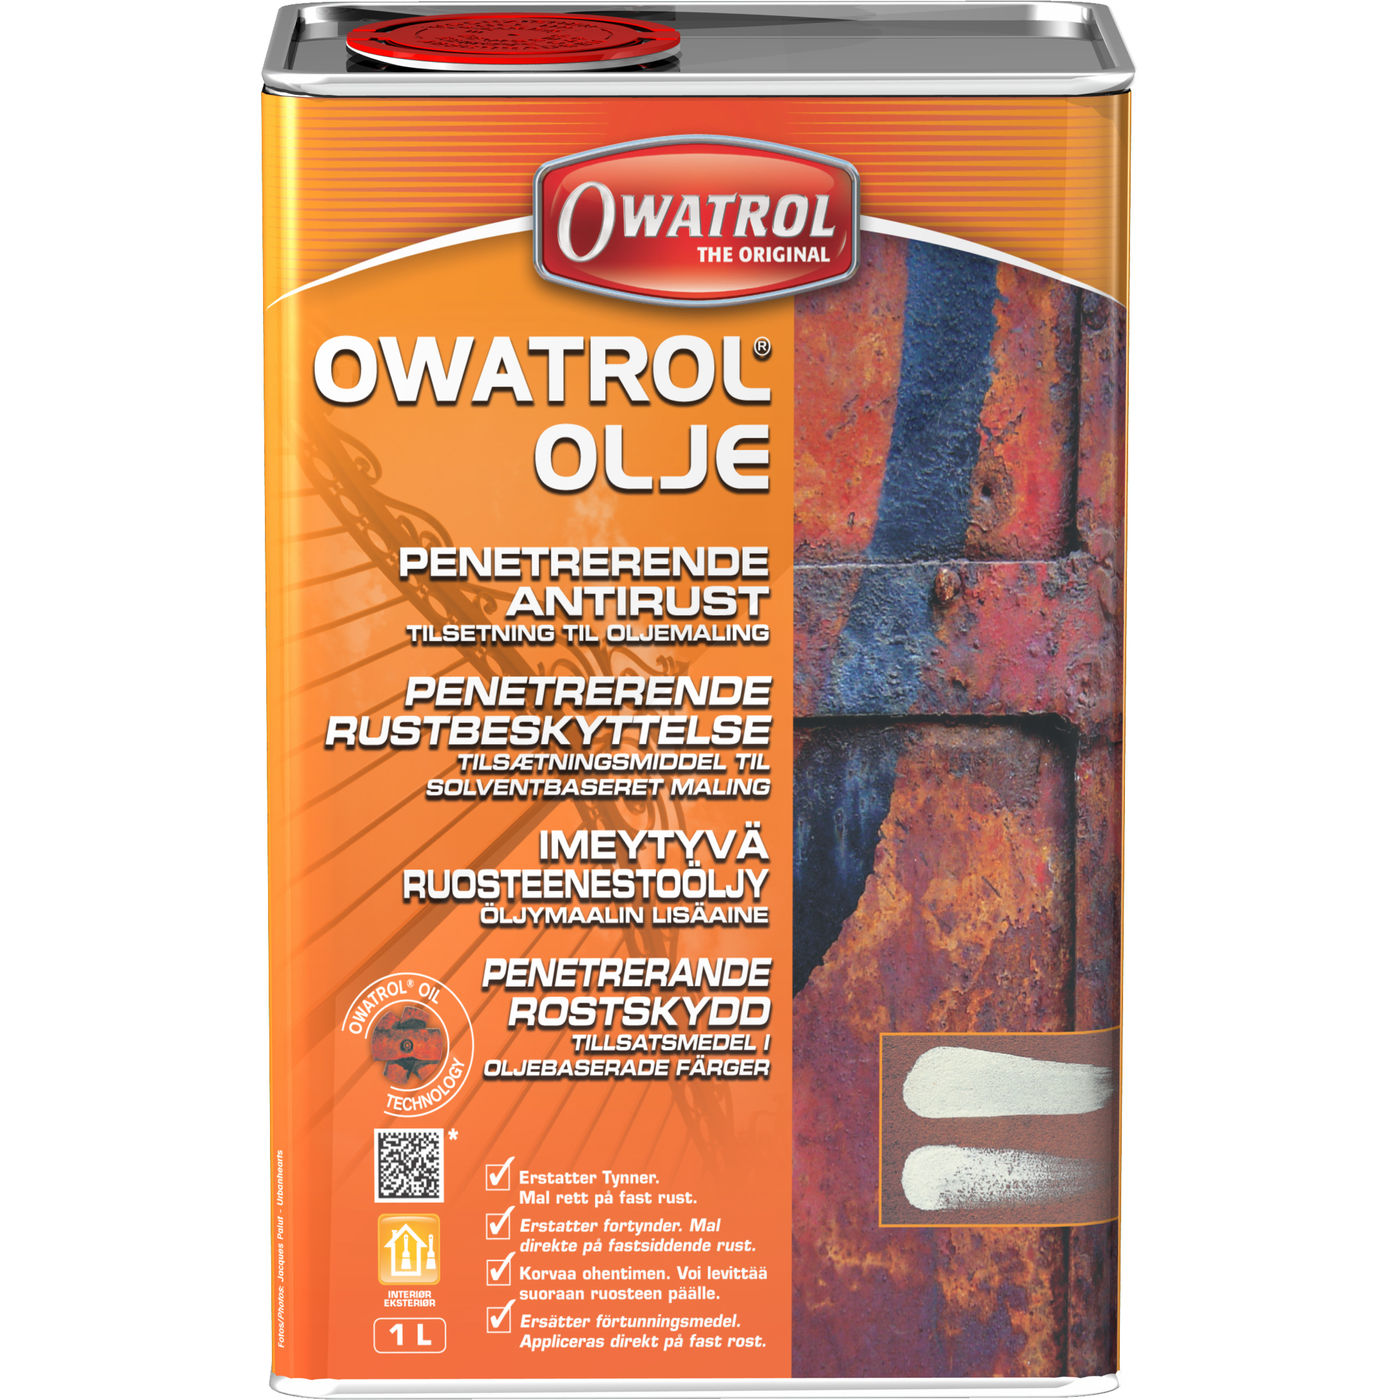 Owatrol olja 1l